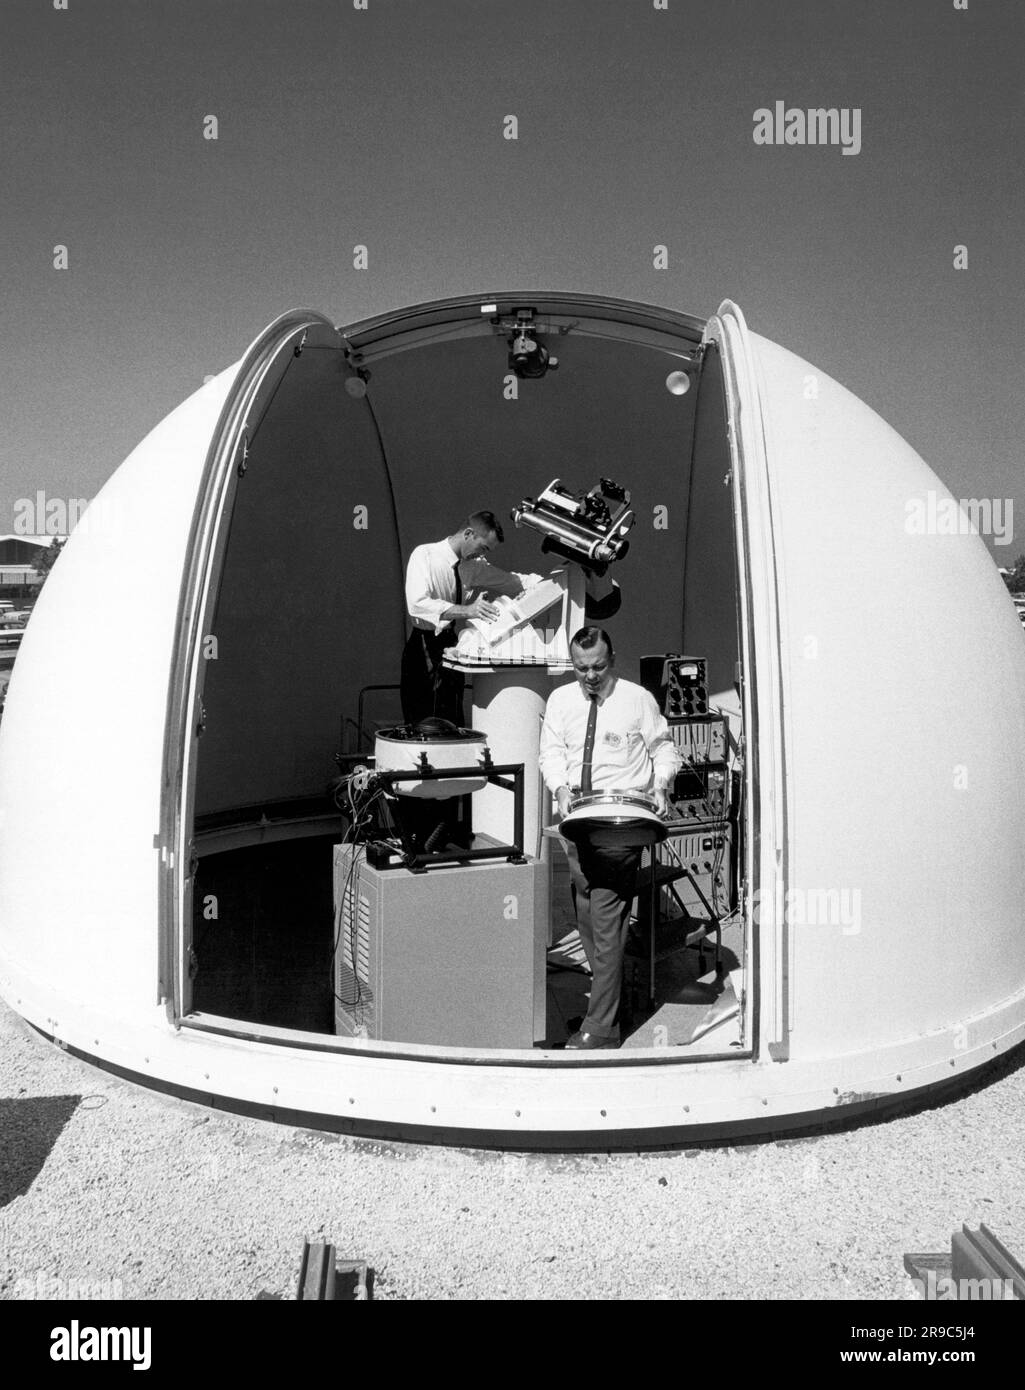 Palos Verde, California: c. 1966 l'osservatorio del Northrop Nortronics Research Park, dove vengono condotti esperimenti di tracciamento delle stelle e del sole per sistemi di guida stellari. Foto Stock